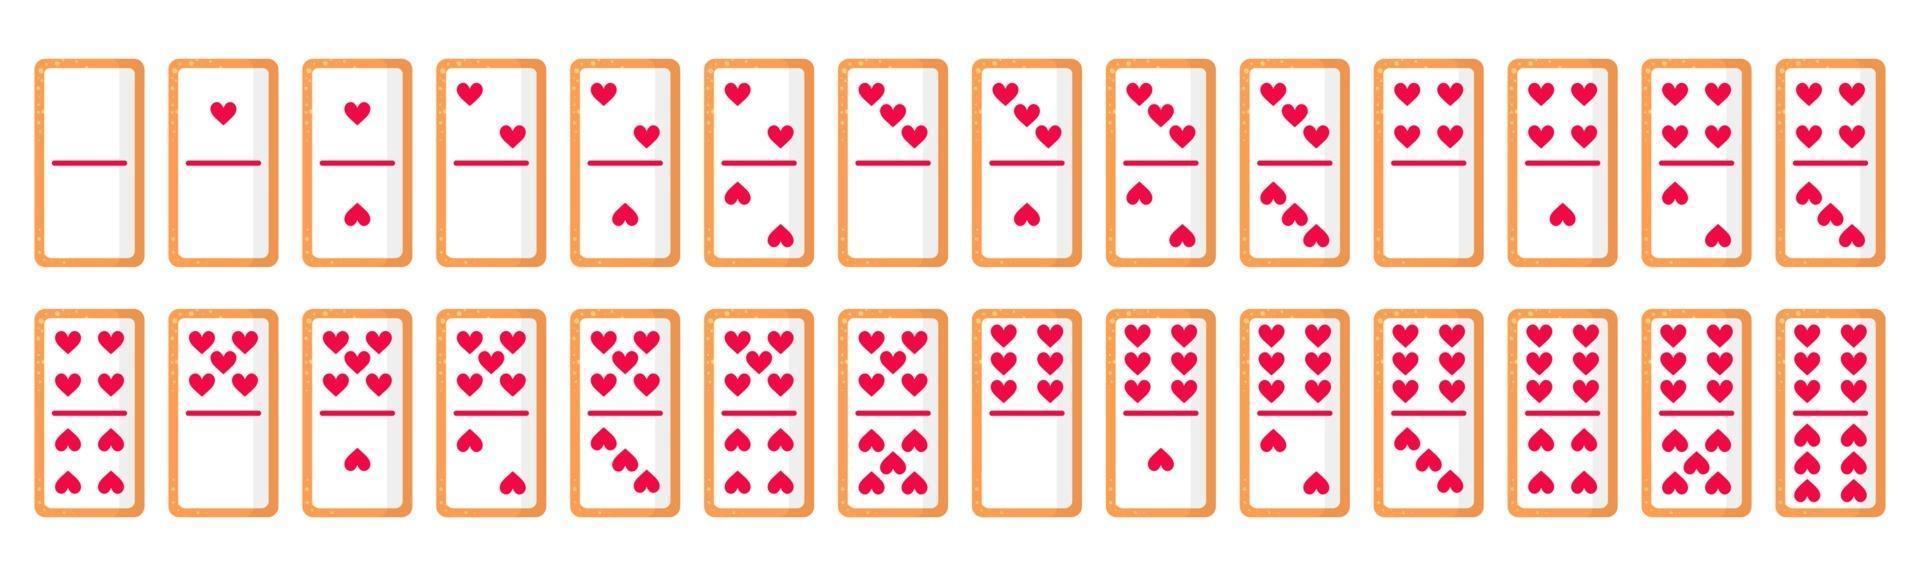 uppsättning av 28 domino-benkakor med hjärtan för alla hjärtans dag. vektor platt ikon design isolerad på vit bakgrund.